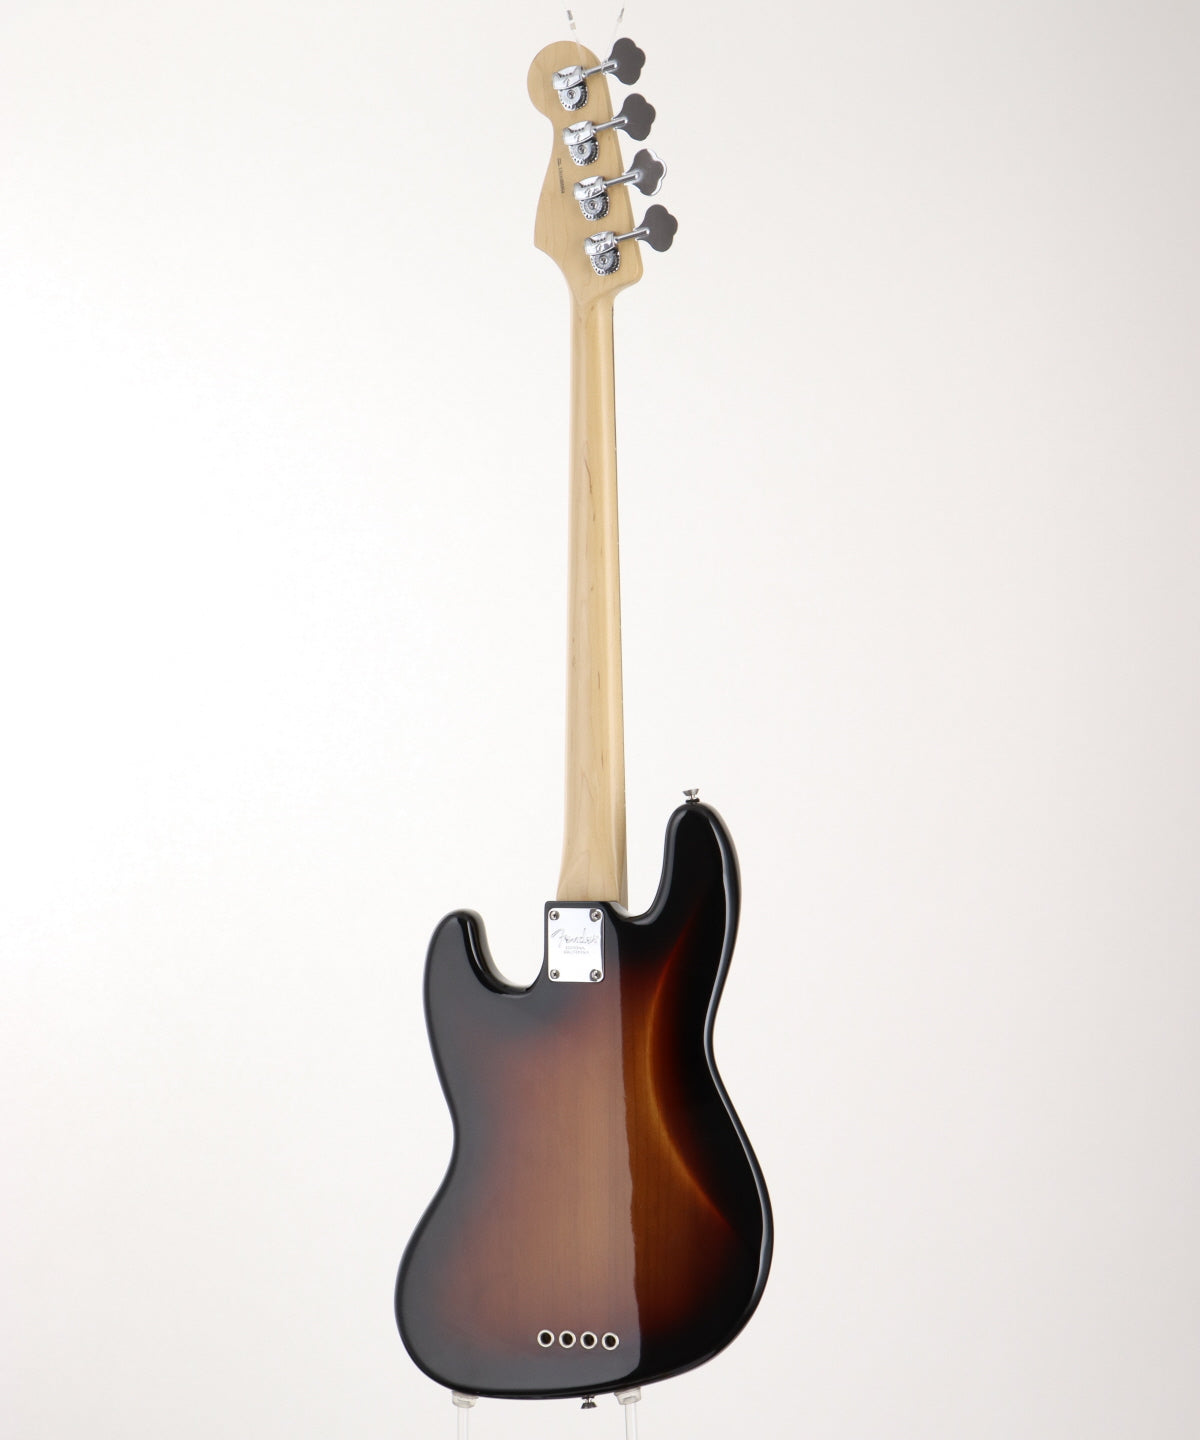 [SN US16066954] USED Fender Usa / AM PRO Jazz Bass Fretless 3Tone Sunburst [03]